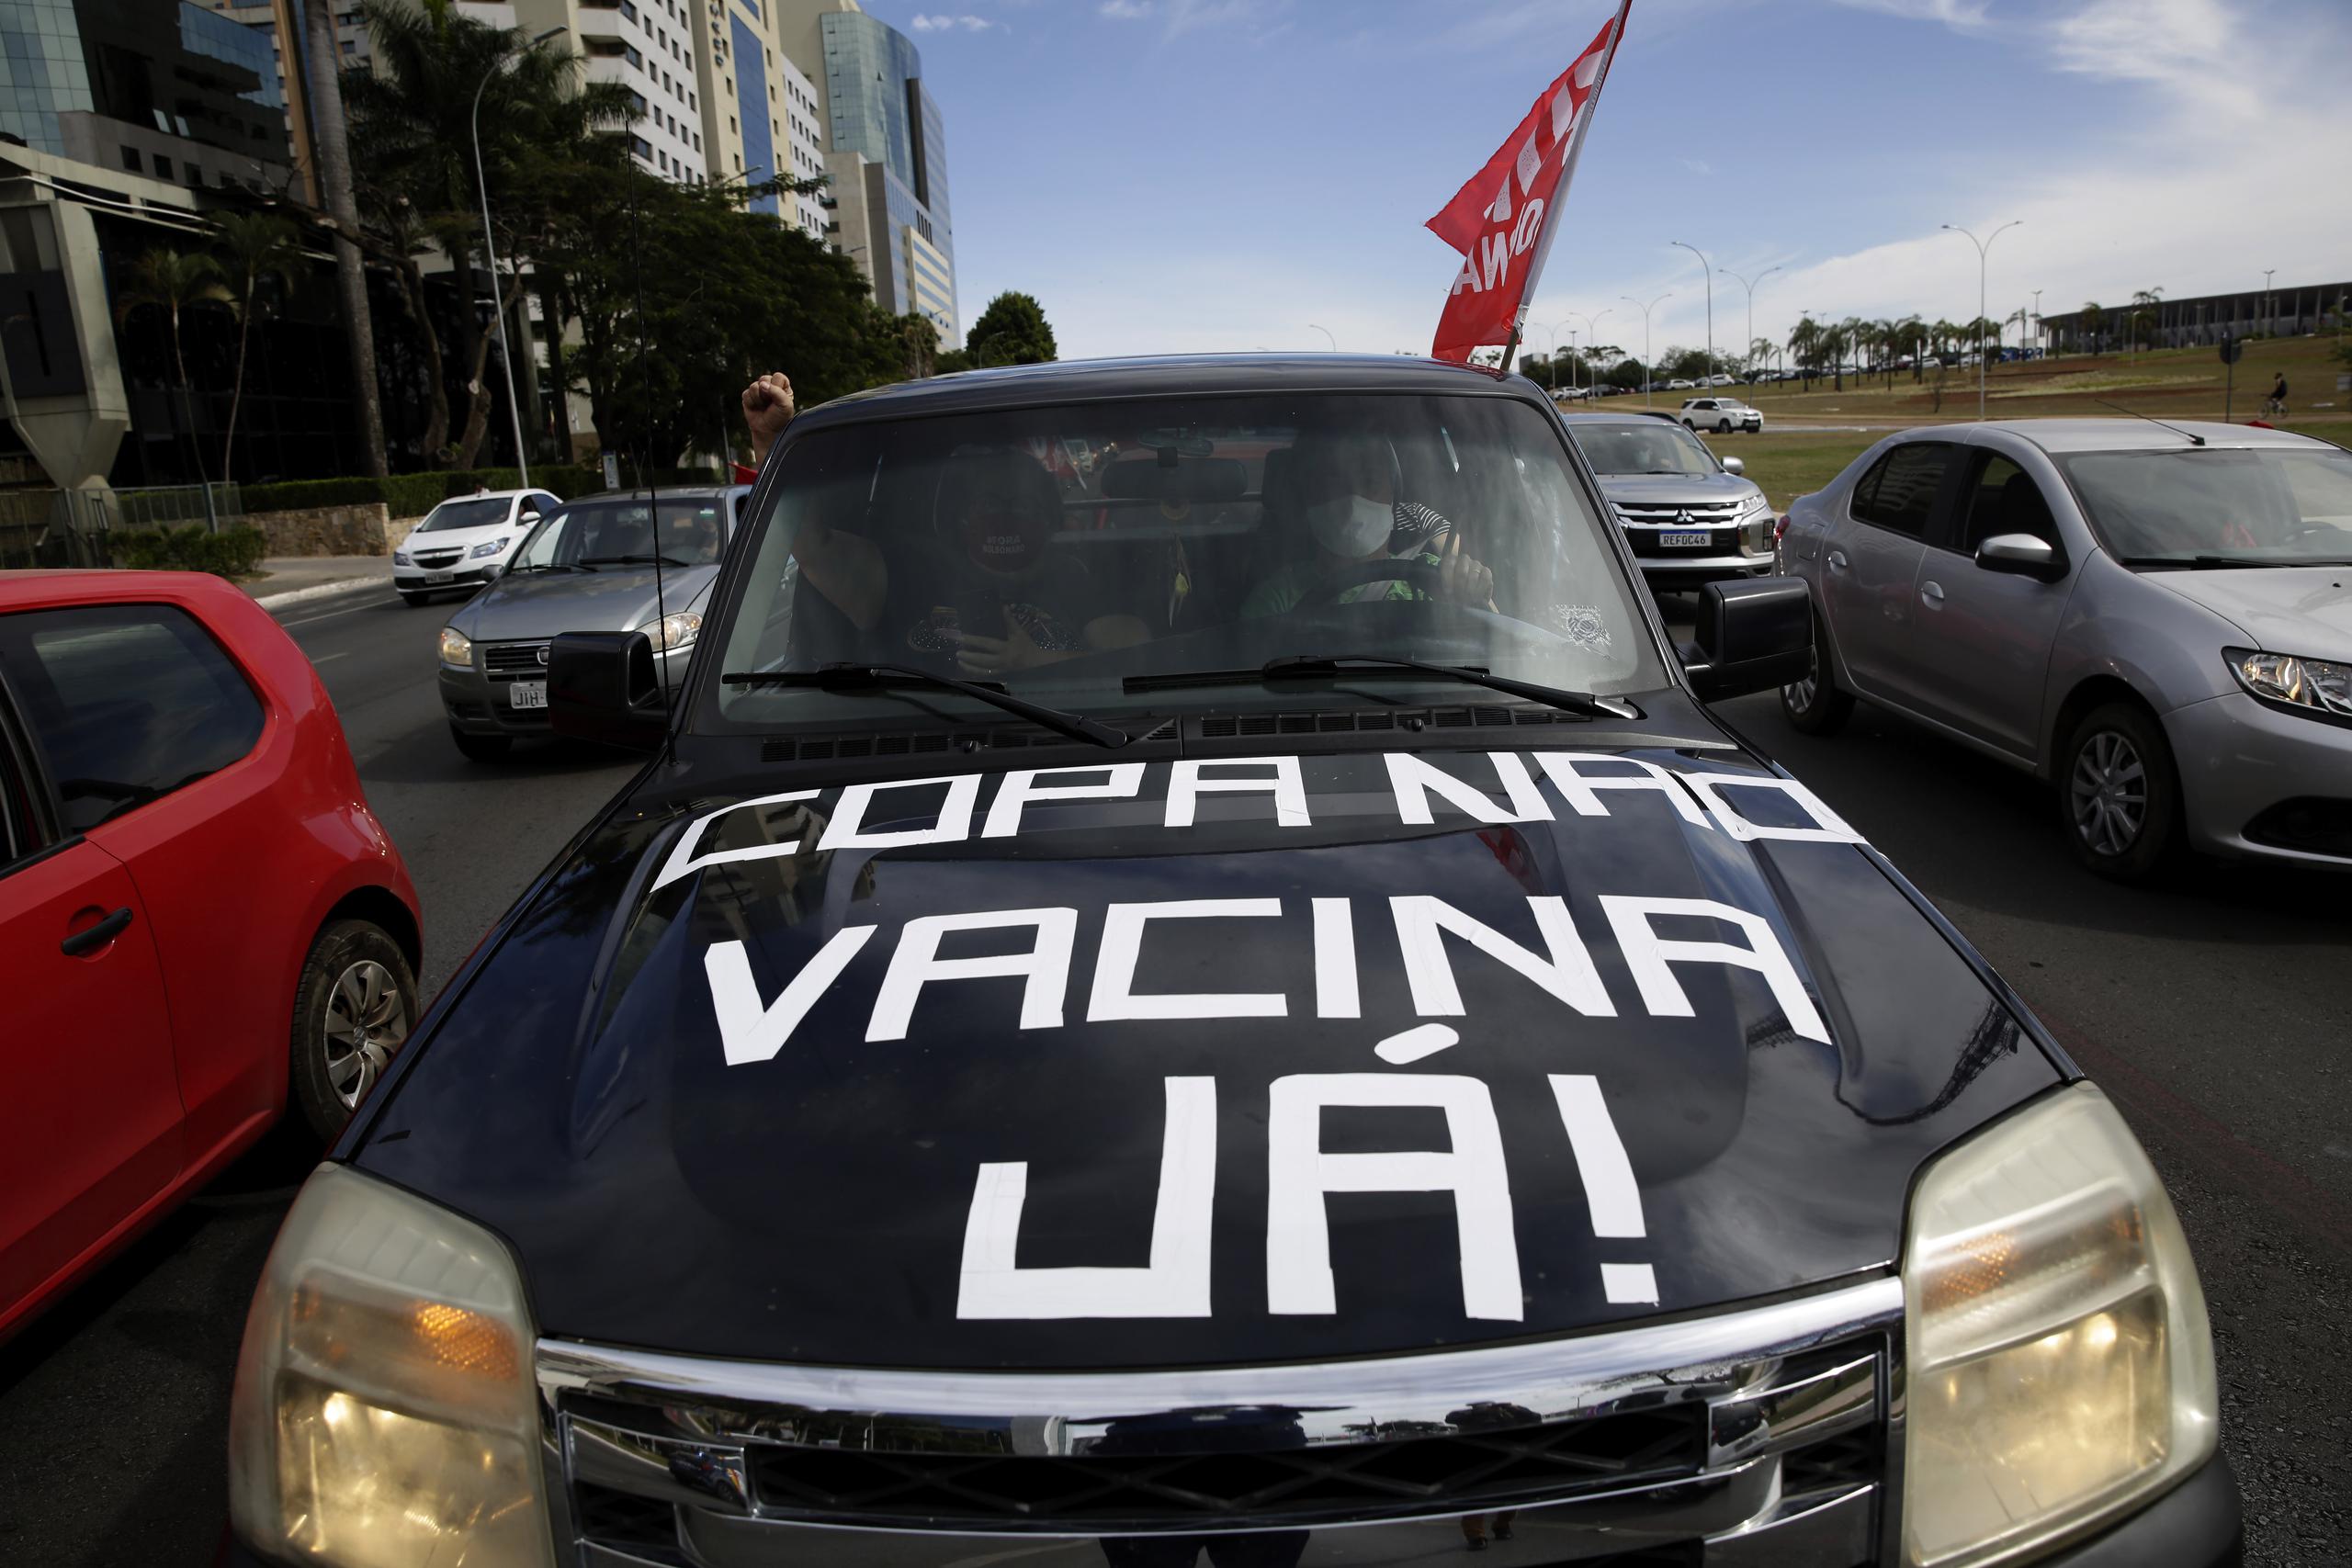 Personas en un auto protestan en Brasilia contra la realización de la Copa América en Brasil debido a la pandemia de coronavirus. El auto tiene escrito en portugués  el mensaje que ha resonado en todo el país: “Copa no, vacunas ya”.